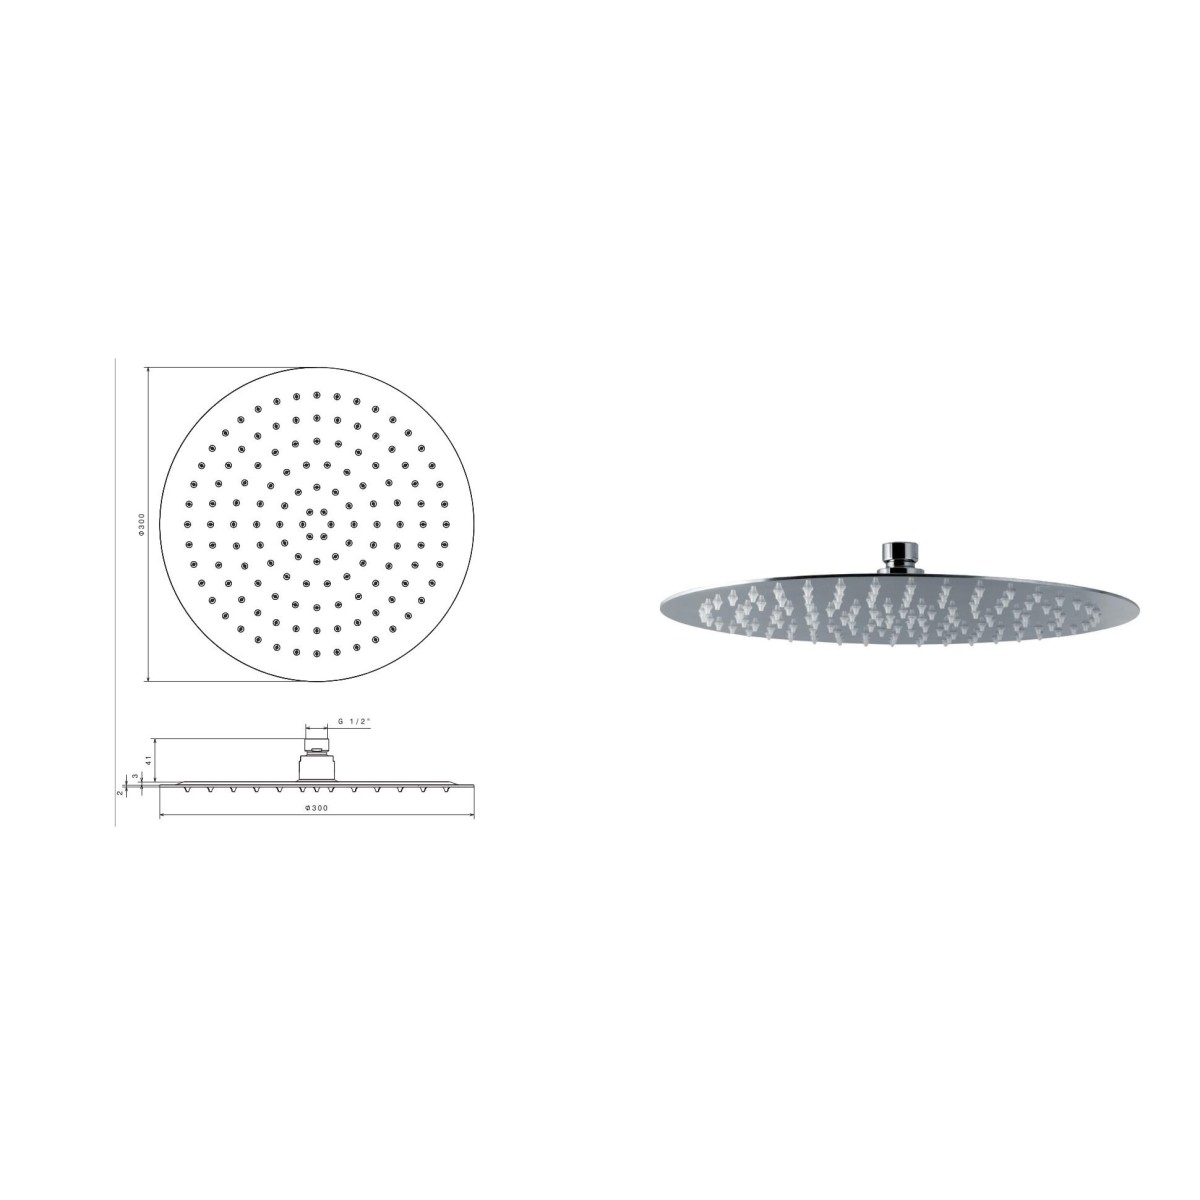 Soffione ultraslim per doccia tondo in acciaio inox con getto a pioggia di diametro da 300 mm di Tubico Nilo - Scheda Tecnica